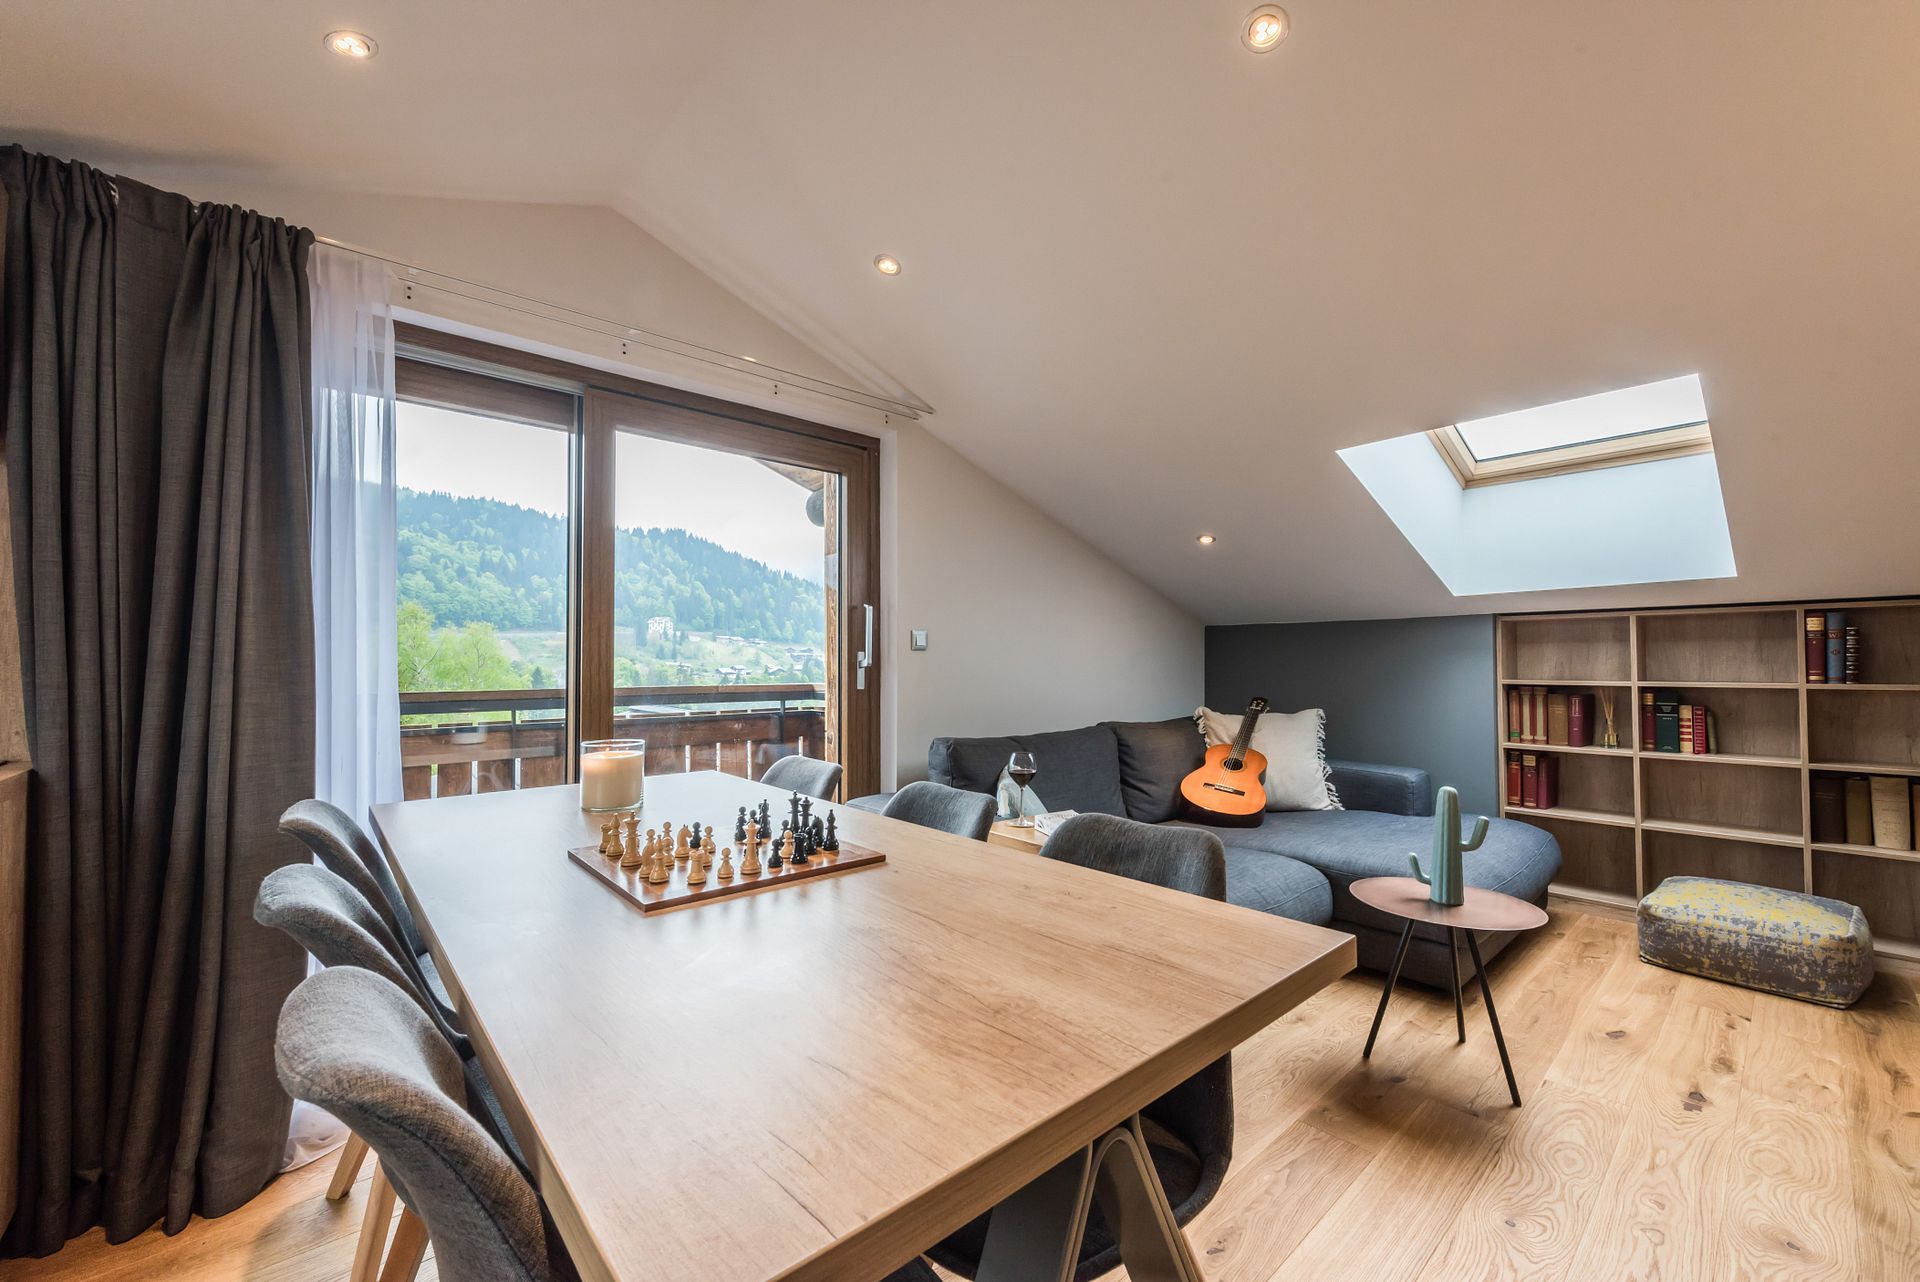 Penthouse 3 chambres à vendre aux Portes du Soleil, Alpes françaises